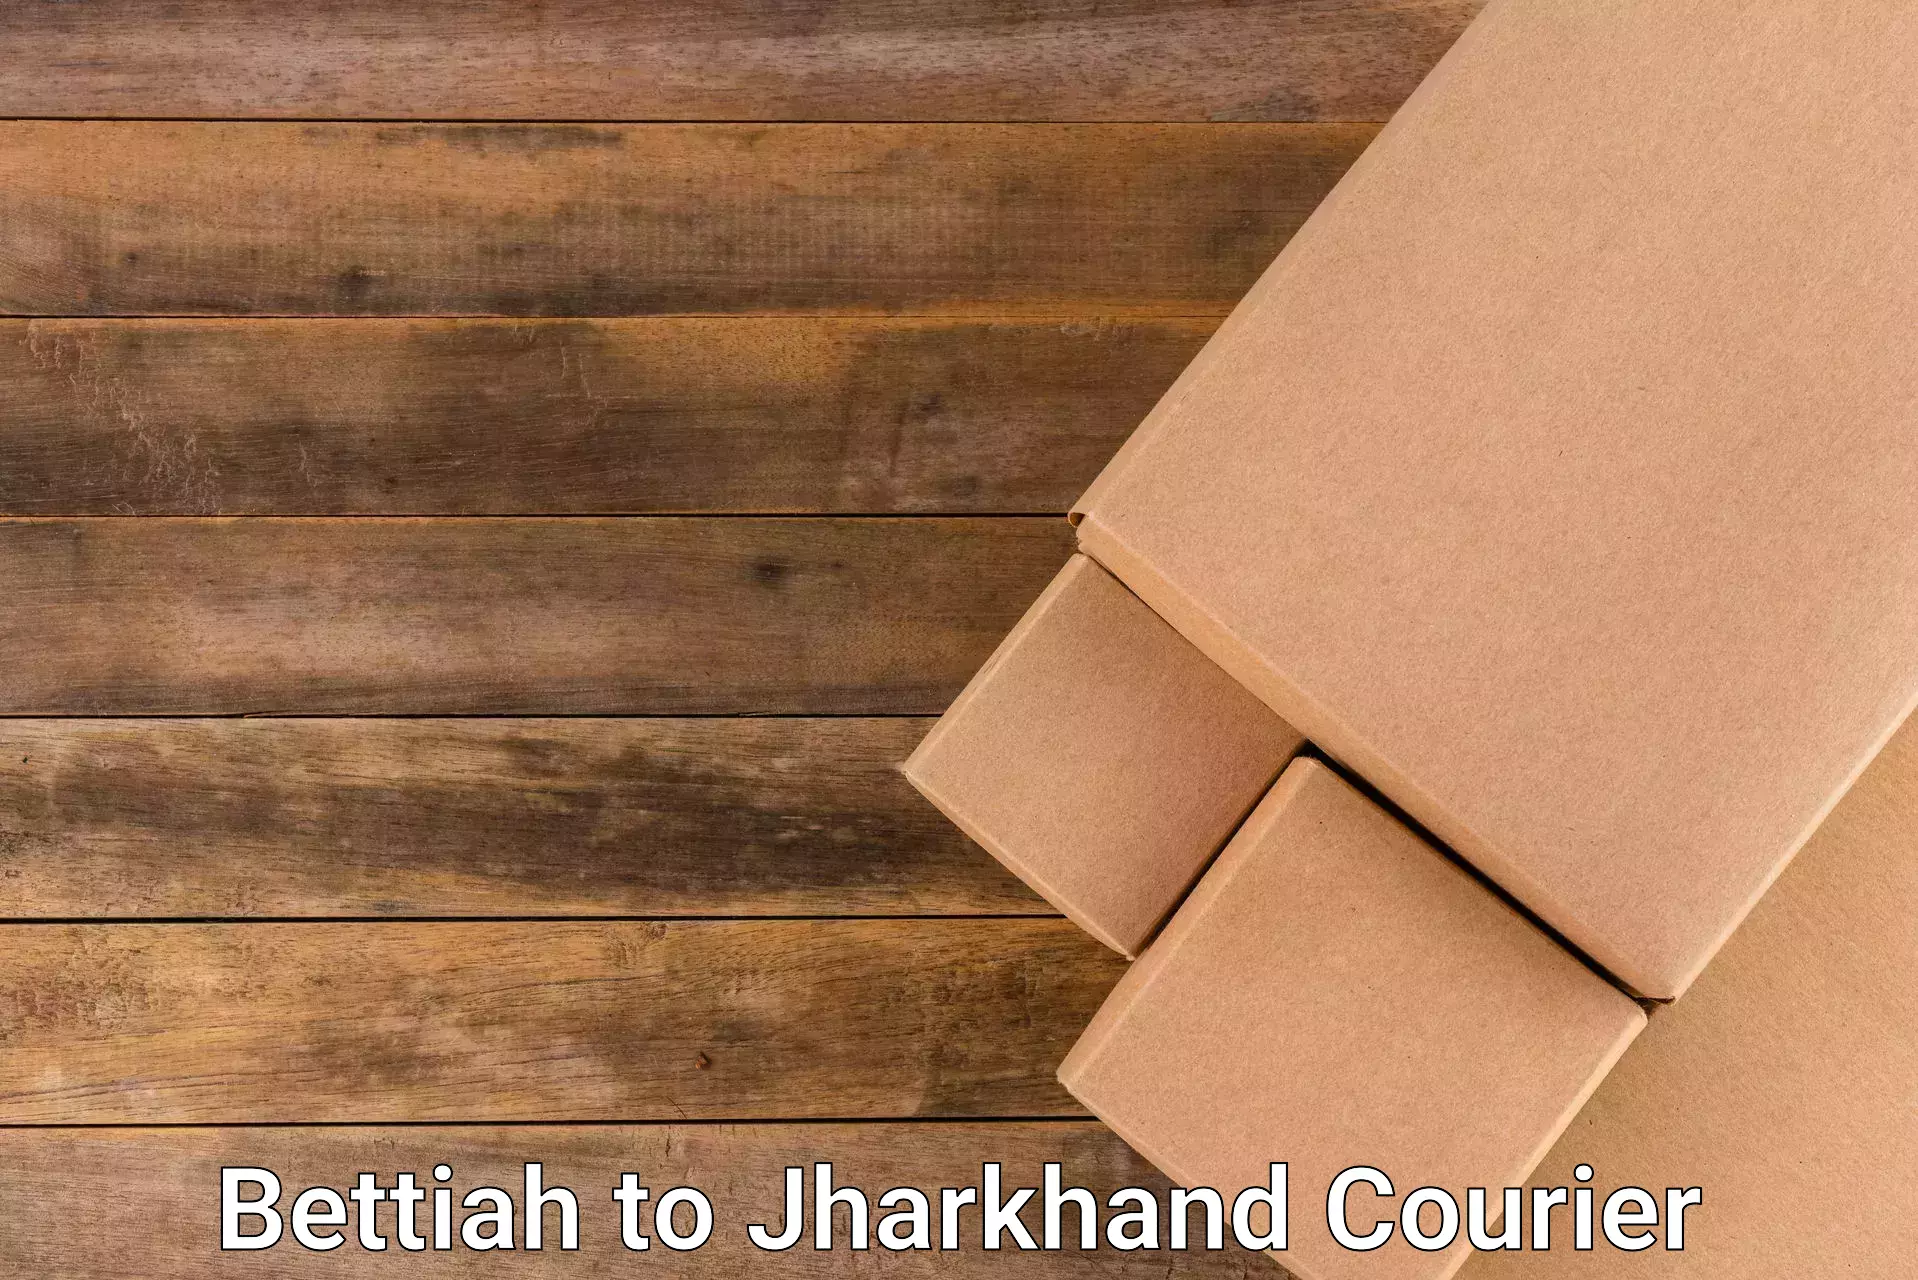 Express courier facilities Bettiah to Jharkhand